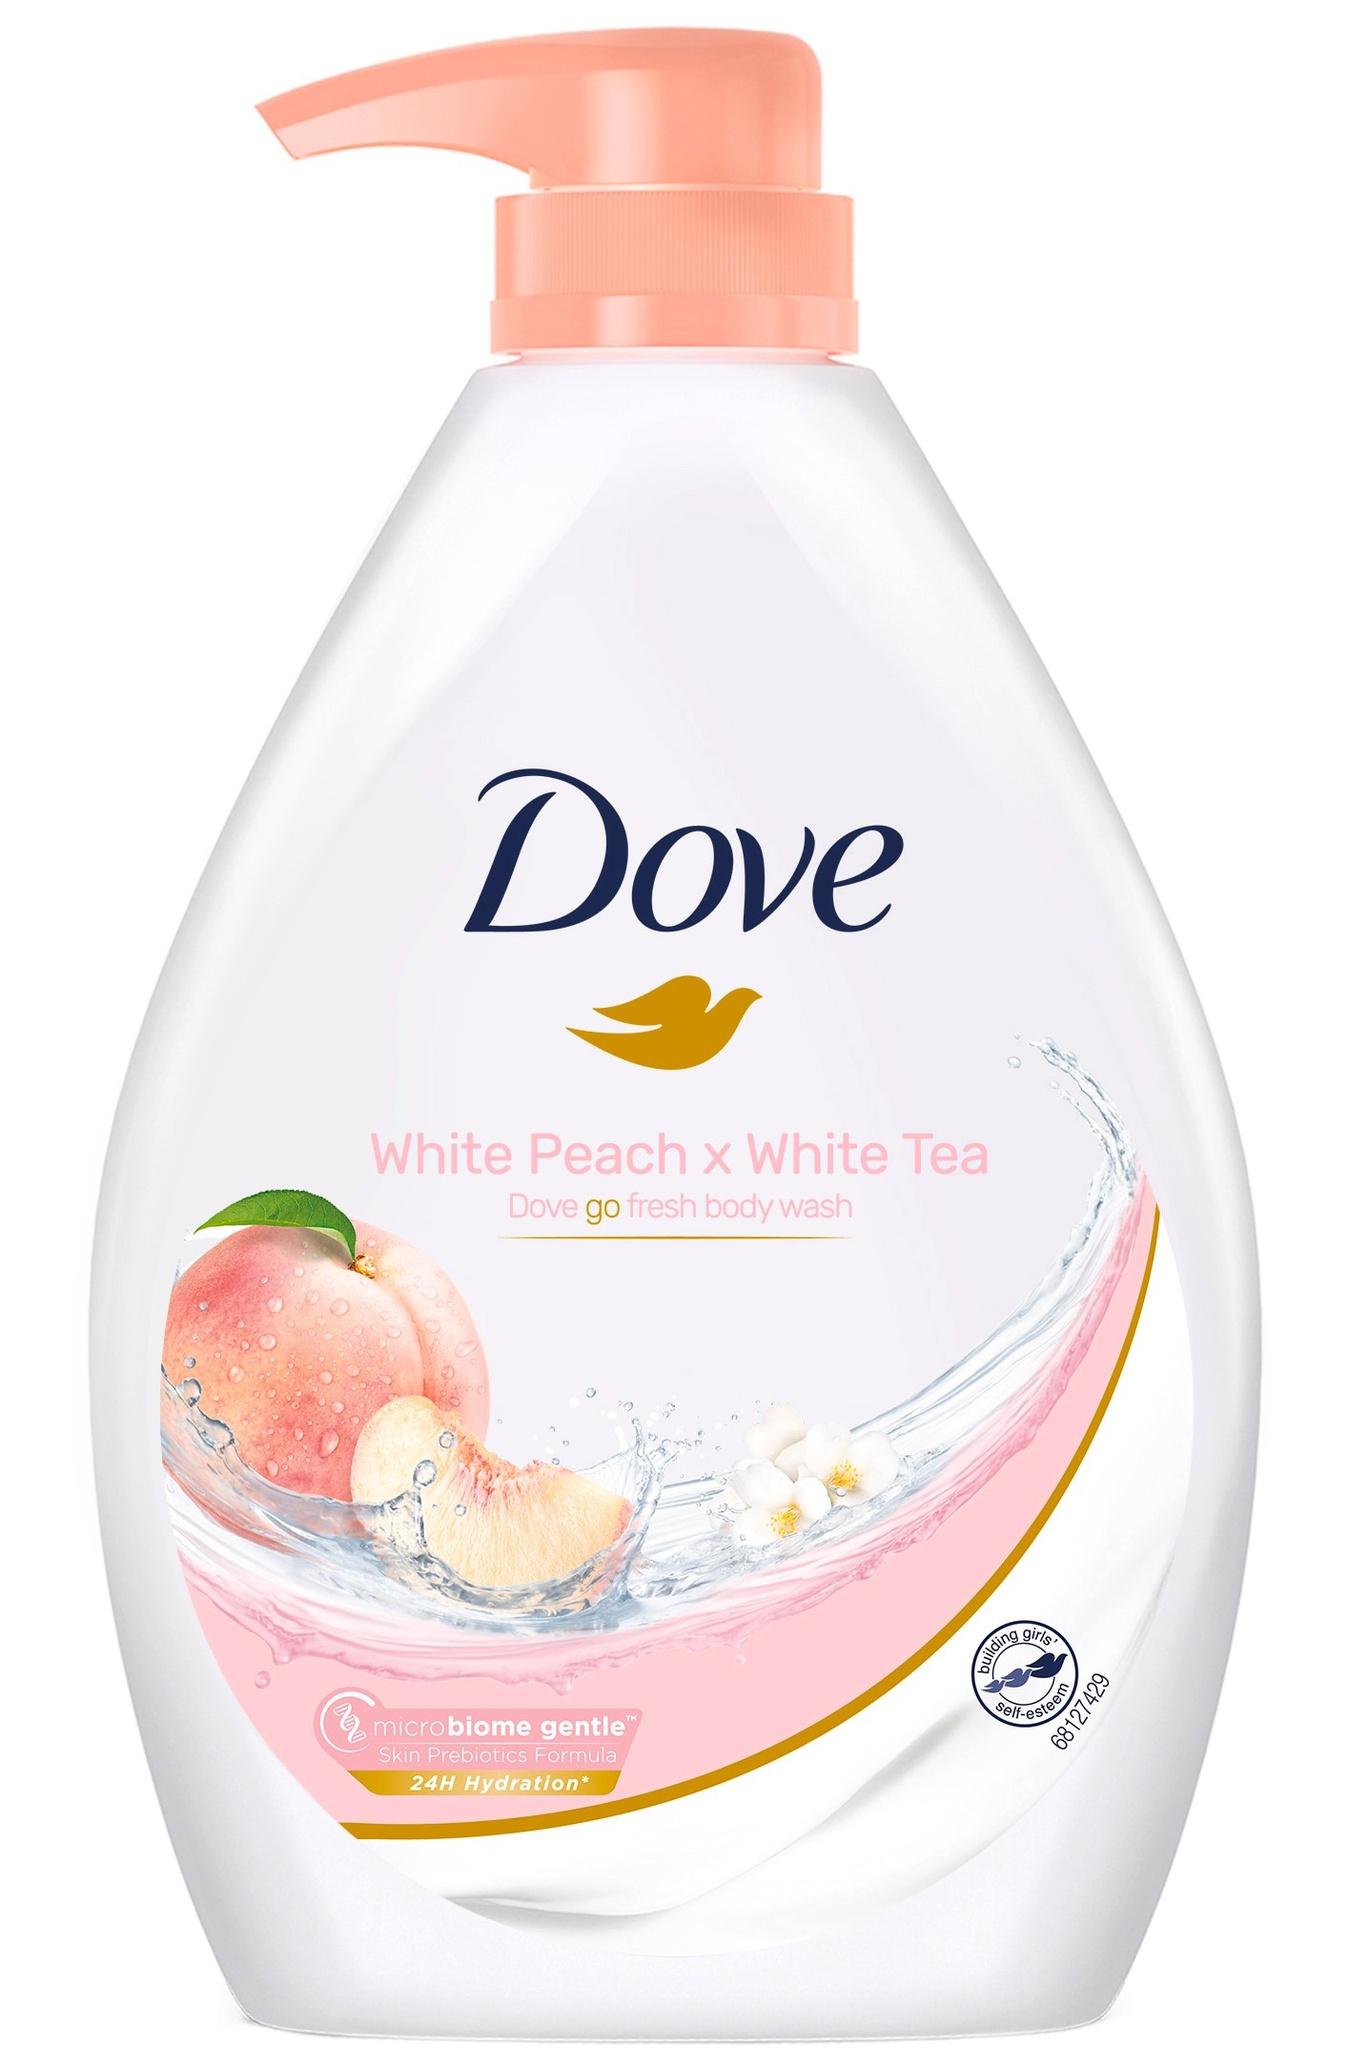 Dove Go Fresh White Peach X White Tea Body Wash